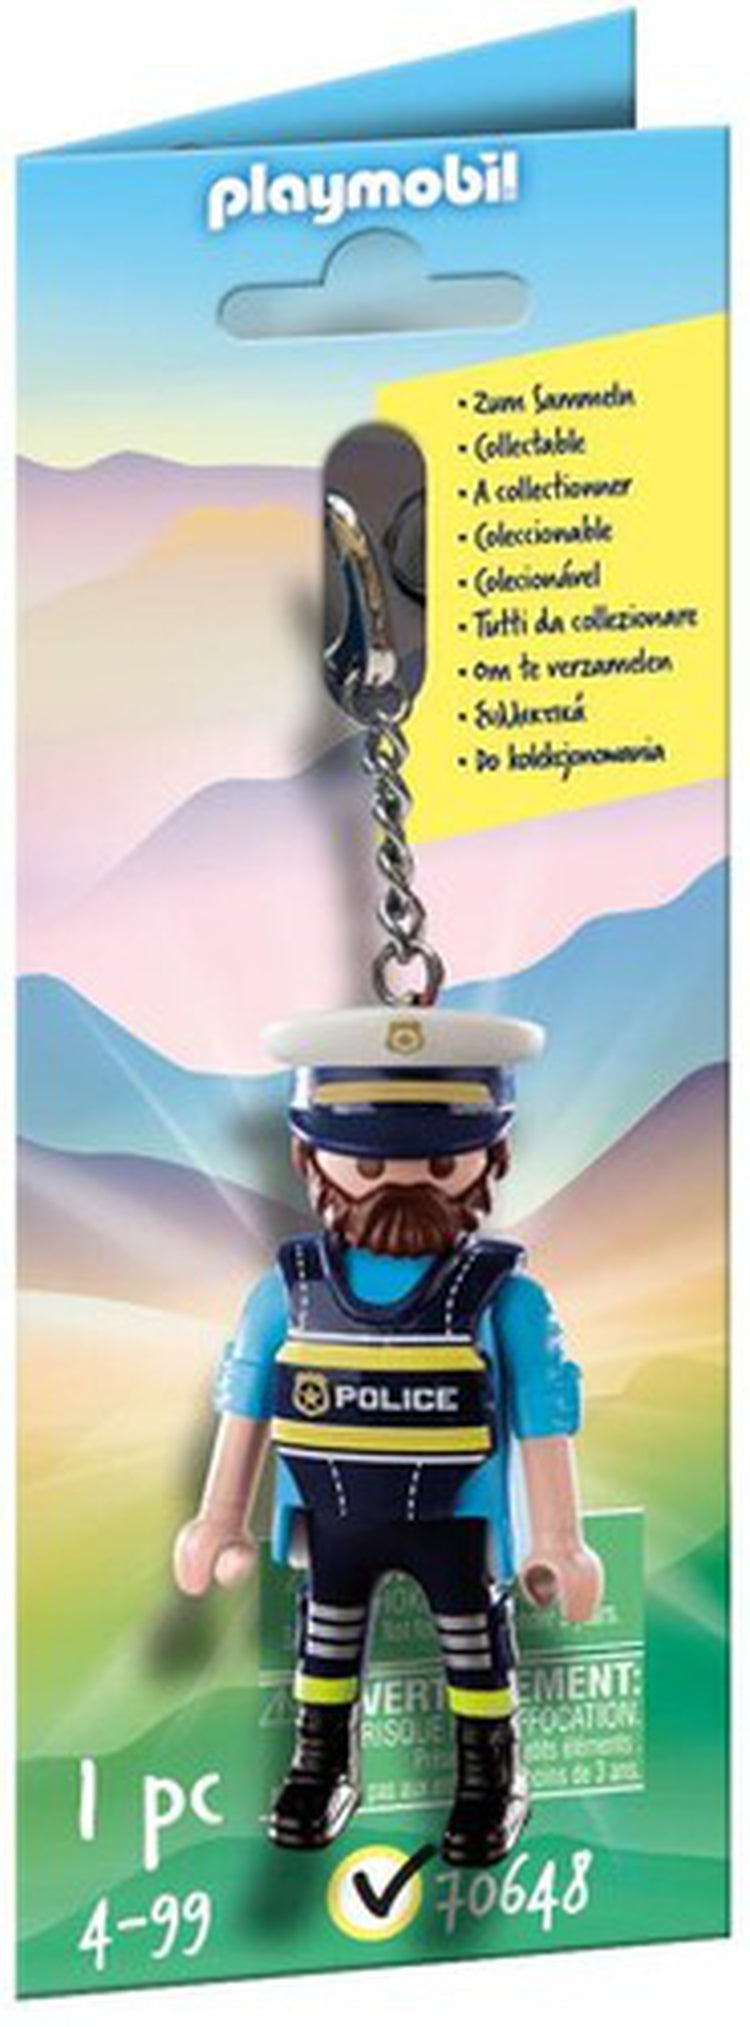 Playmobil - Police Keychain